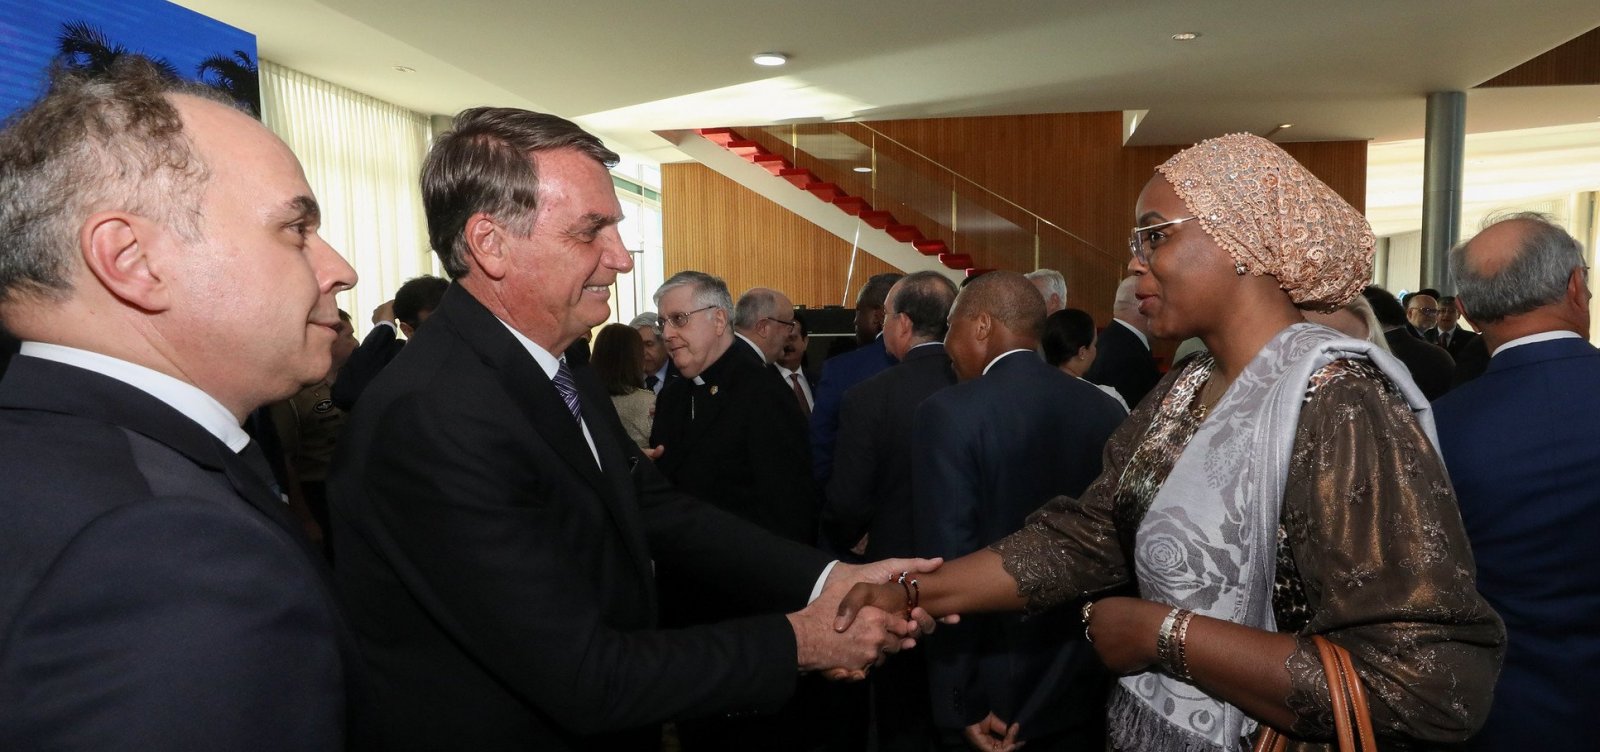 Após encontro com embaixadores, imprensa internacional compara Bolsonaro a Trump